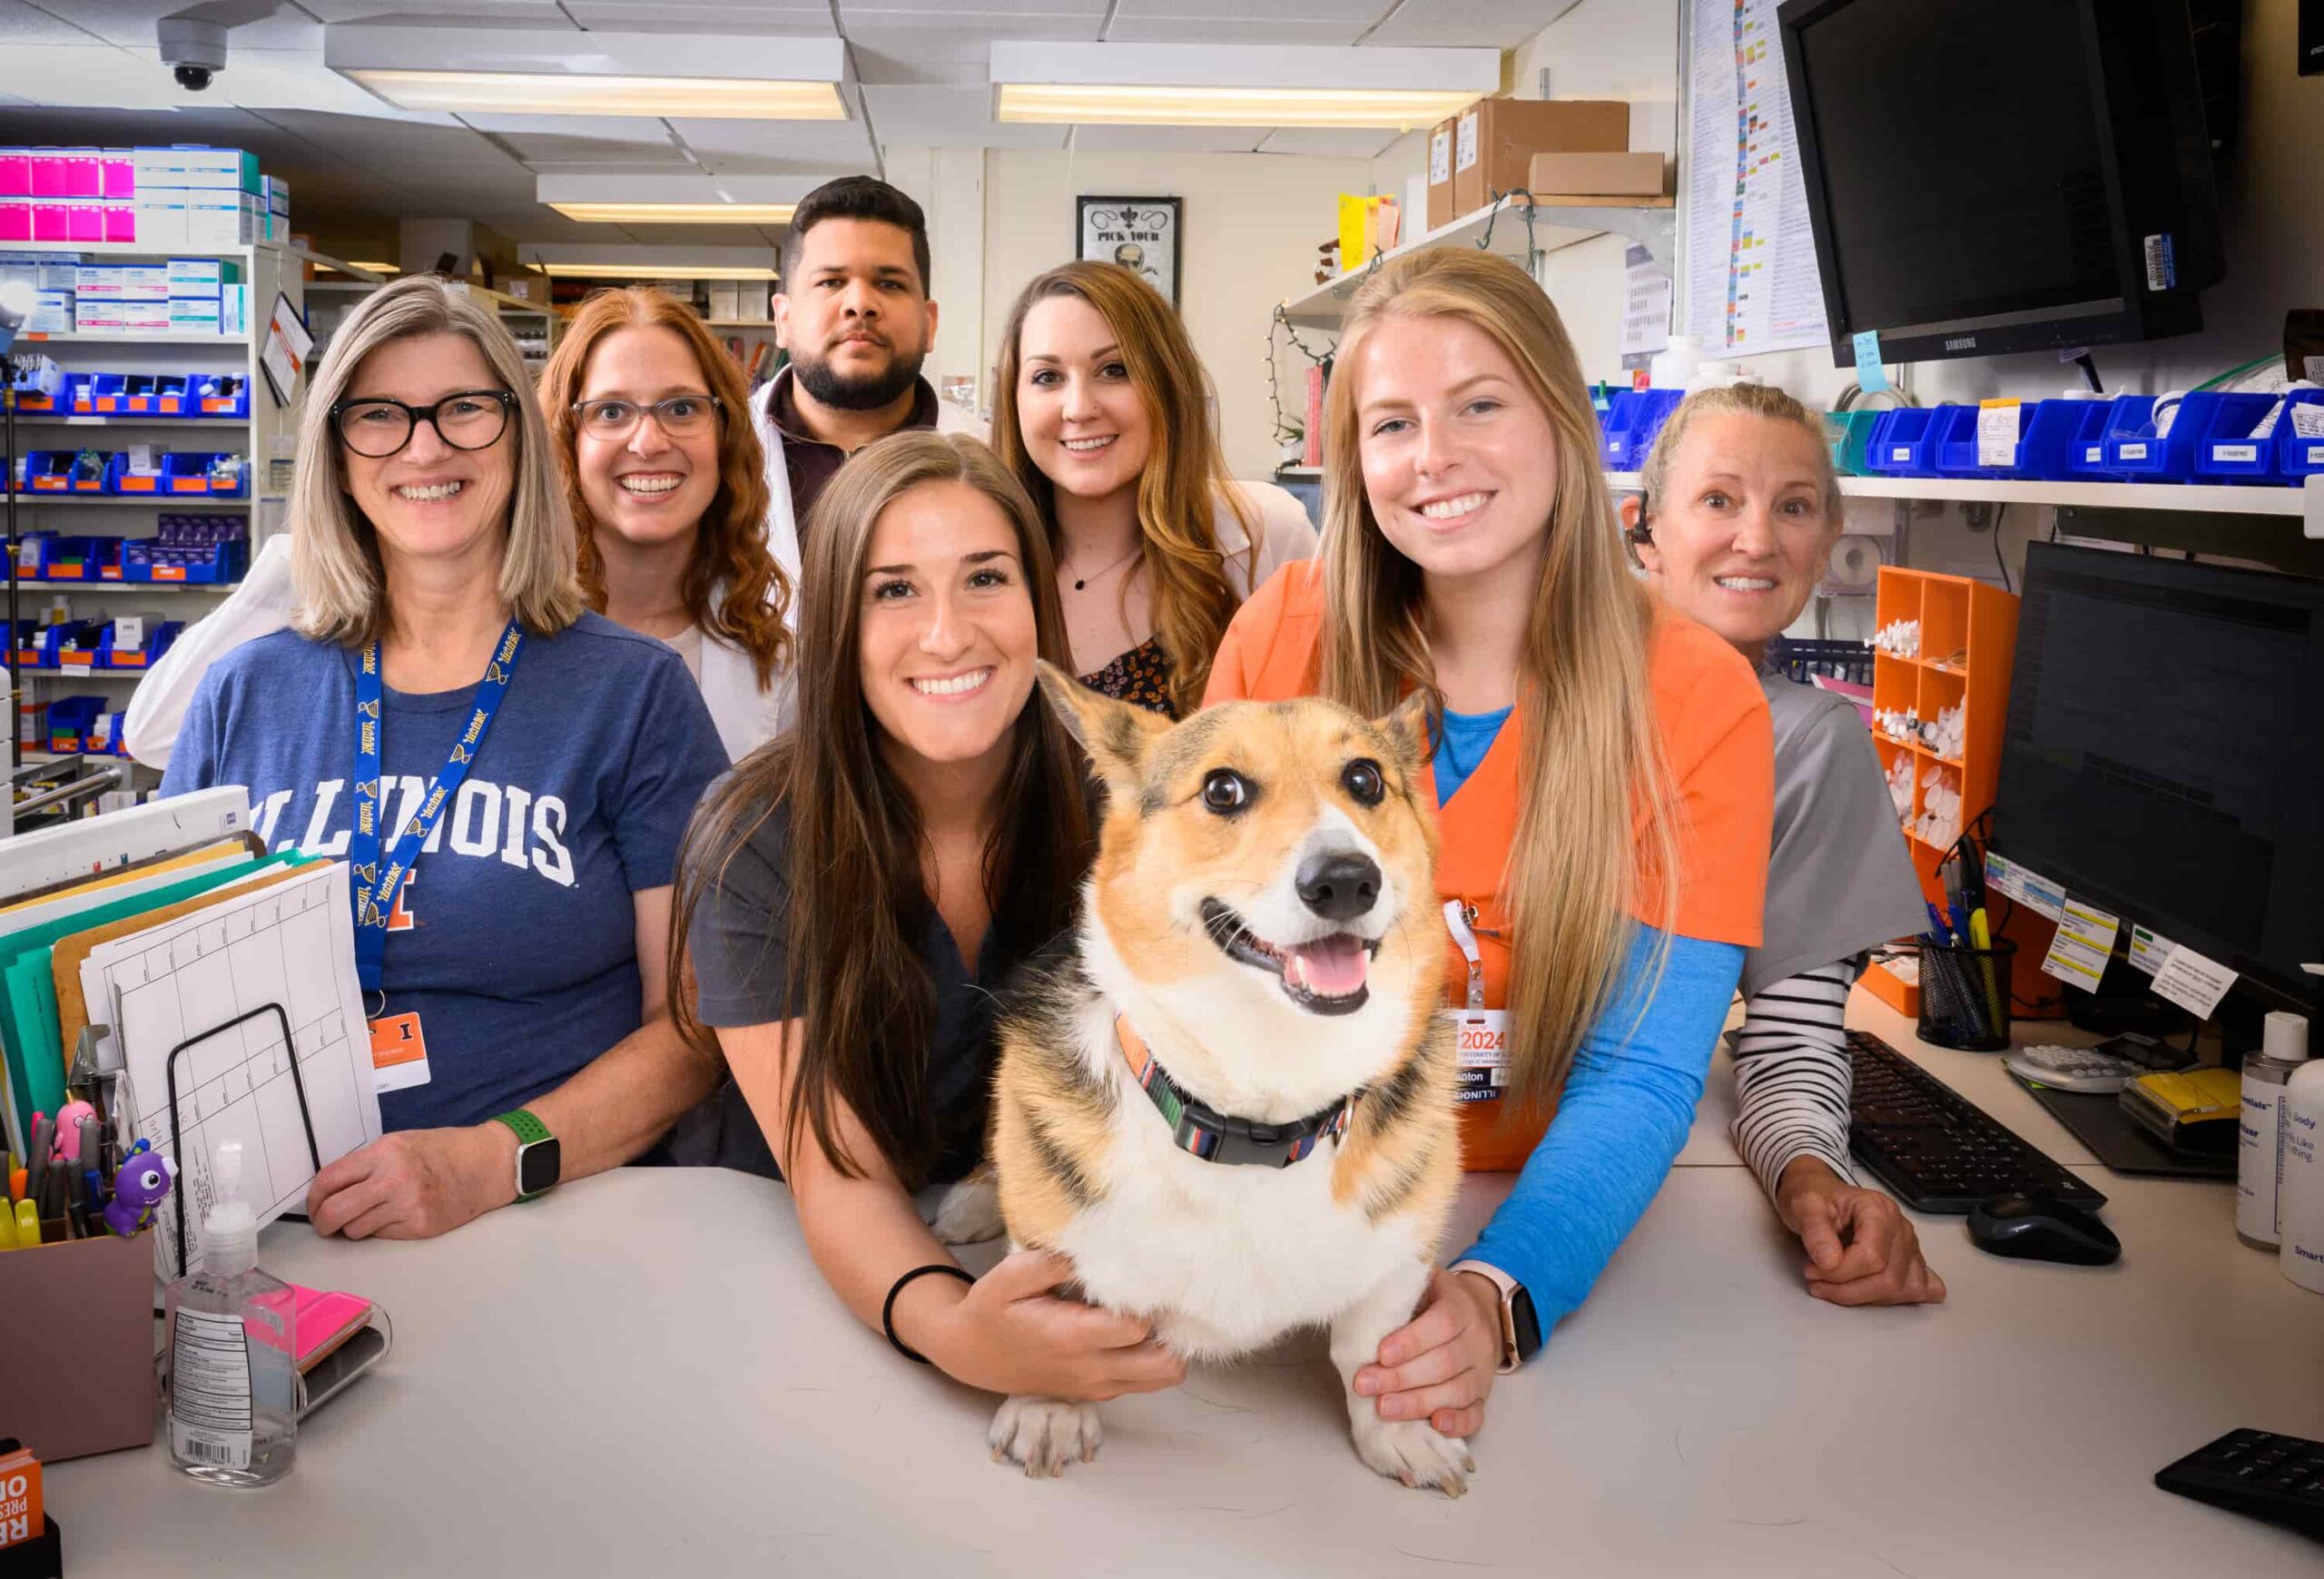 medication dispensary team with corgi dog